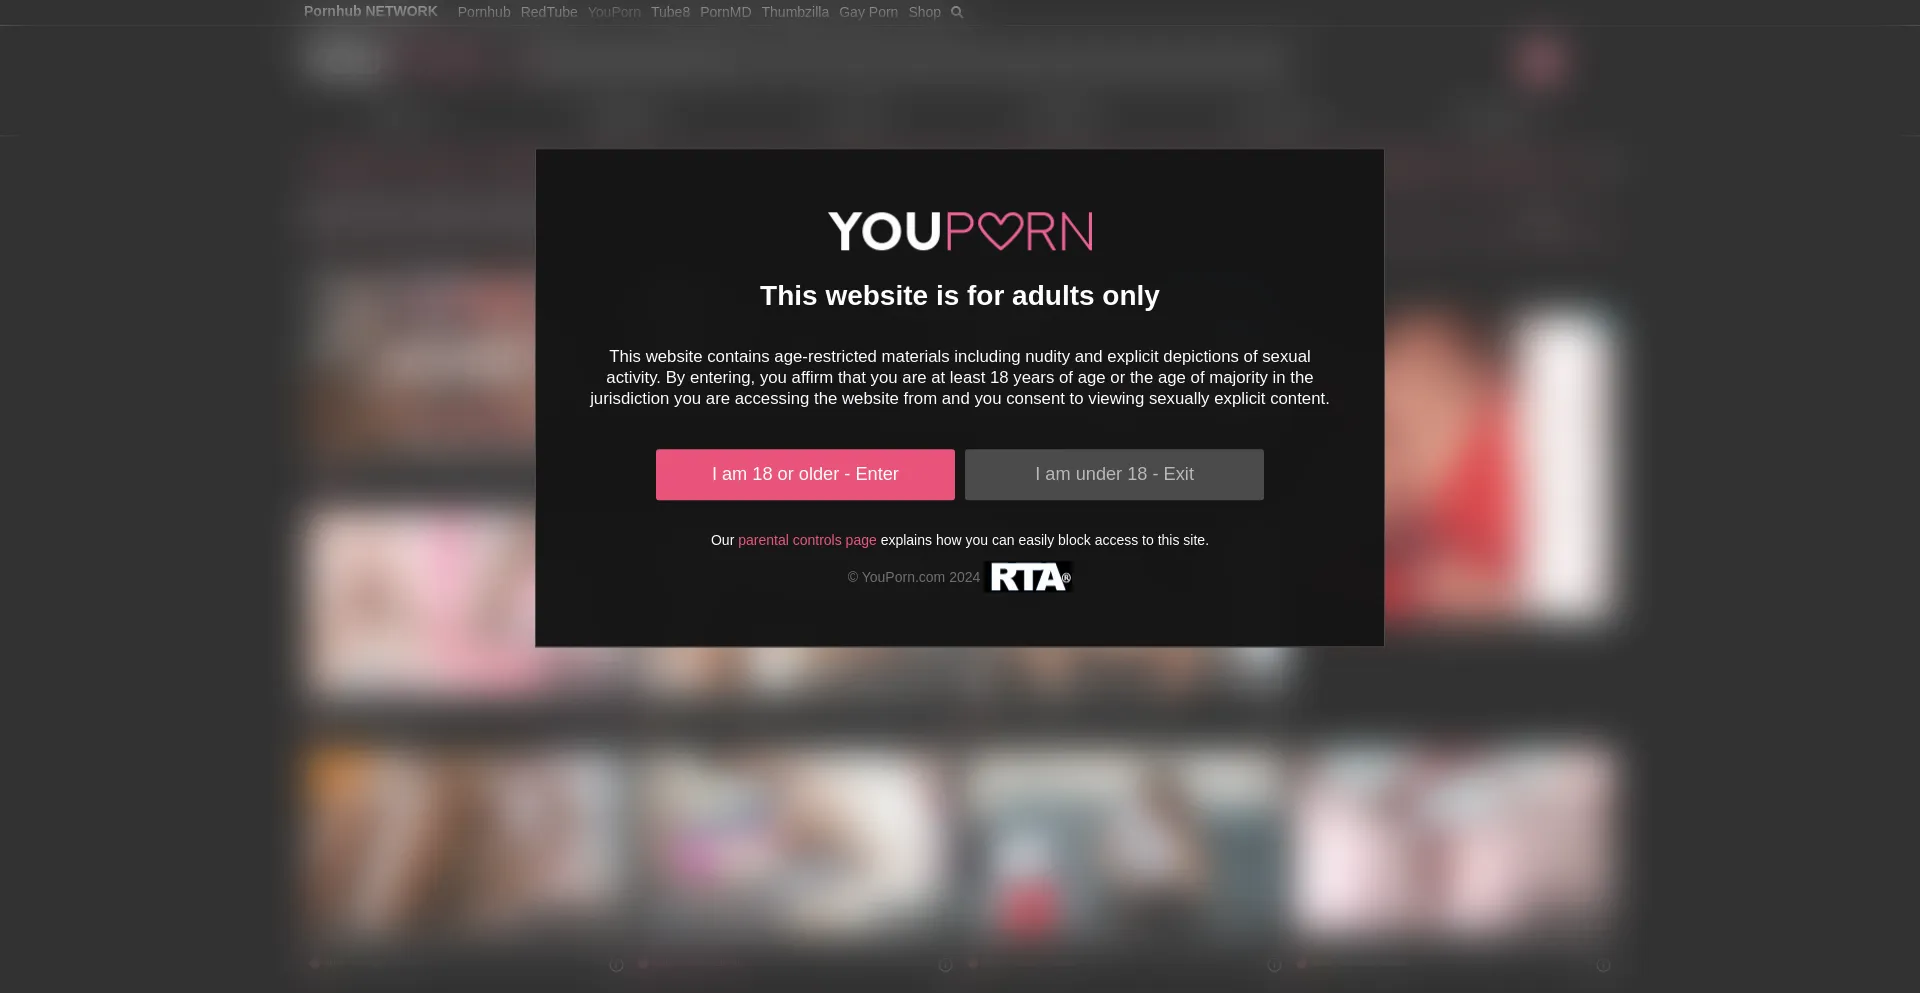 Youporn.com